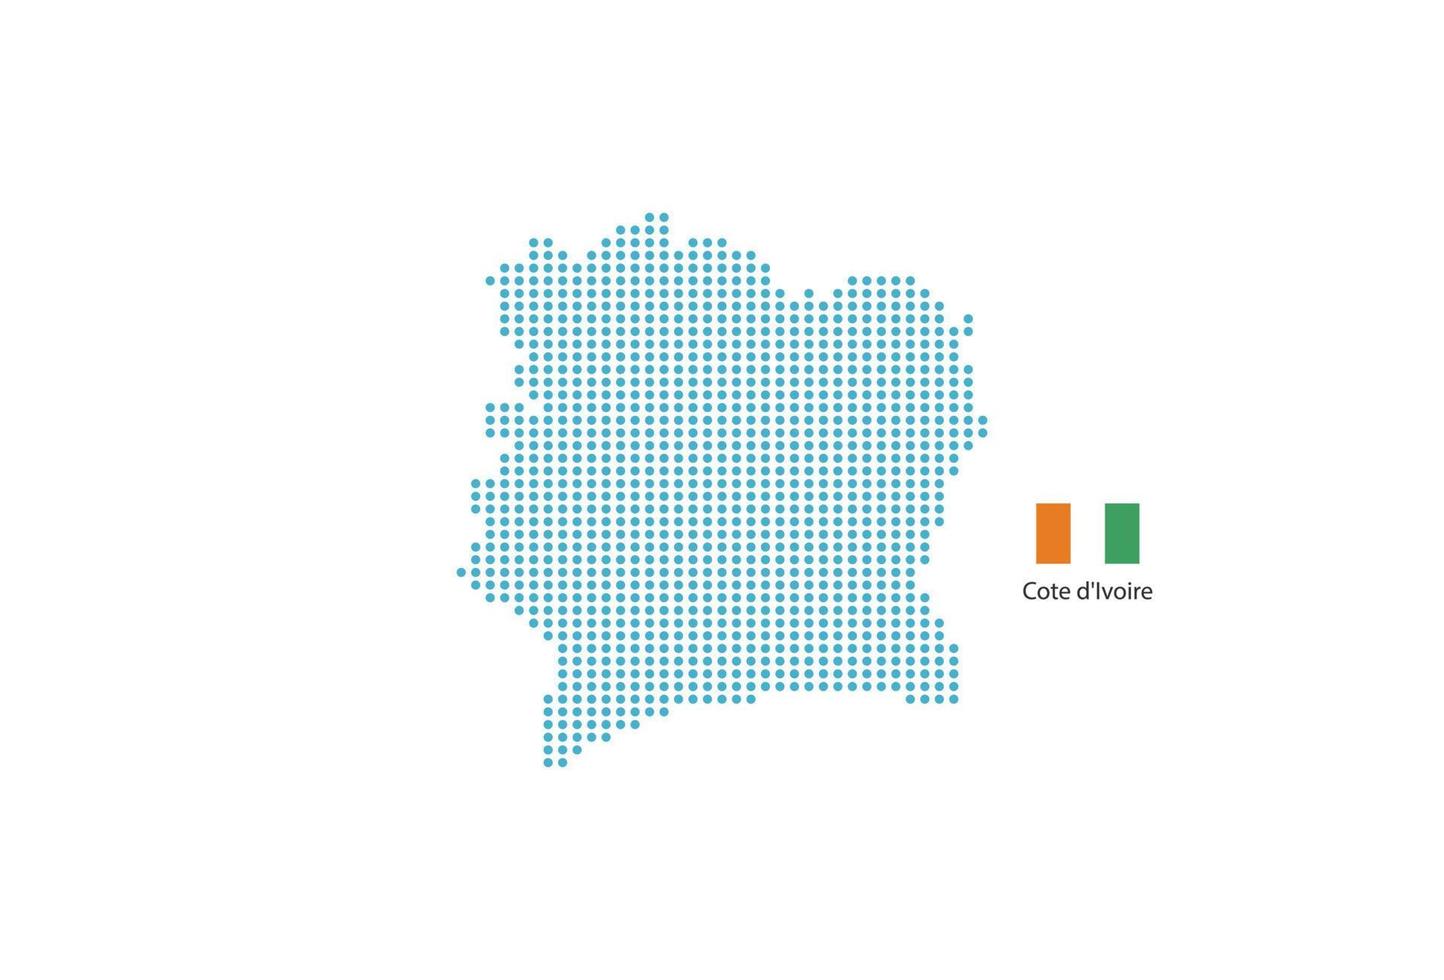 Cote d'Ivoire map design blue circle, white background with Cote d'Ivoire flag. vector